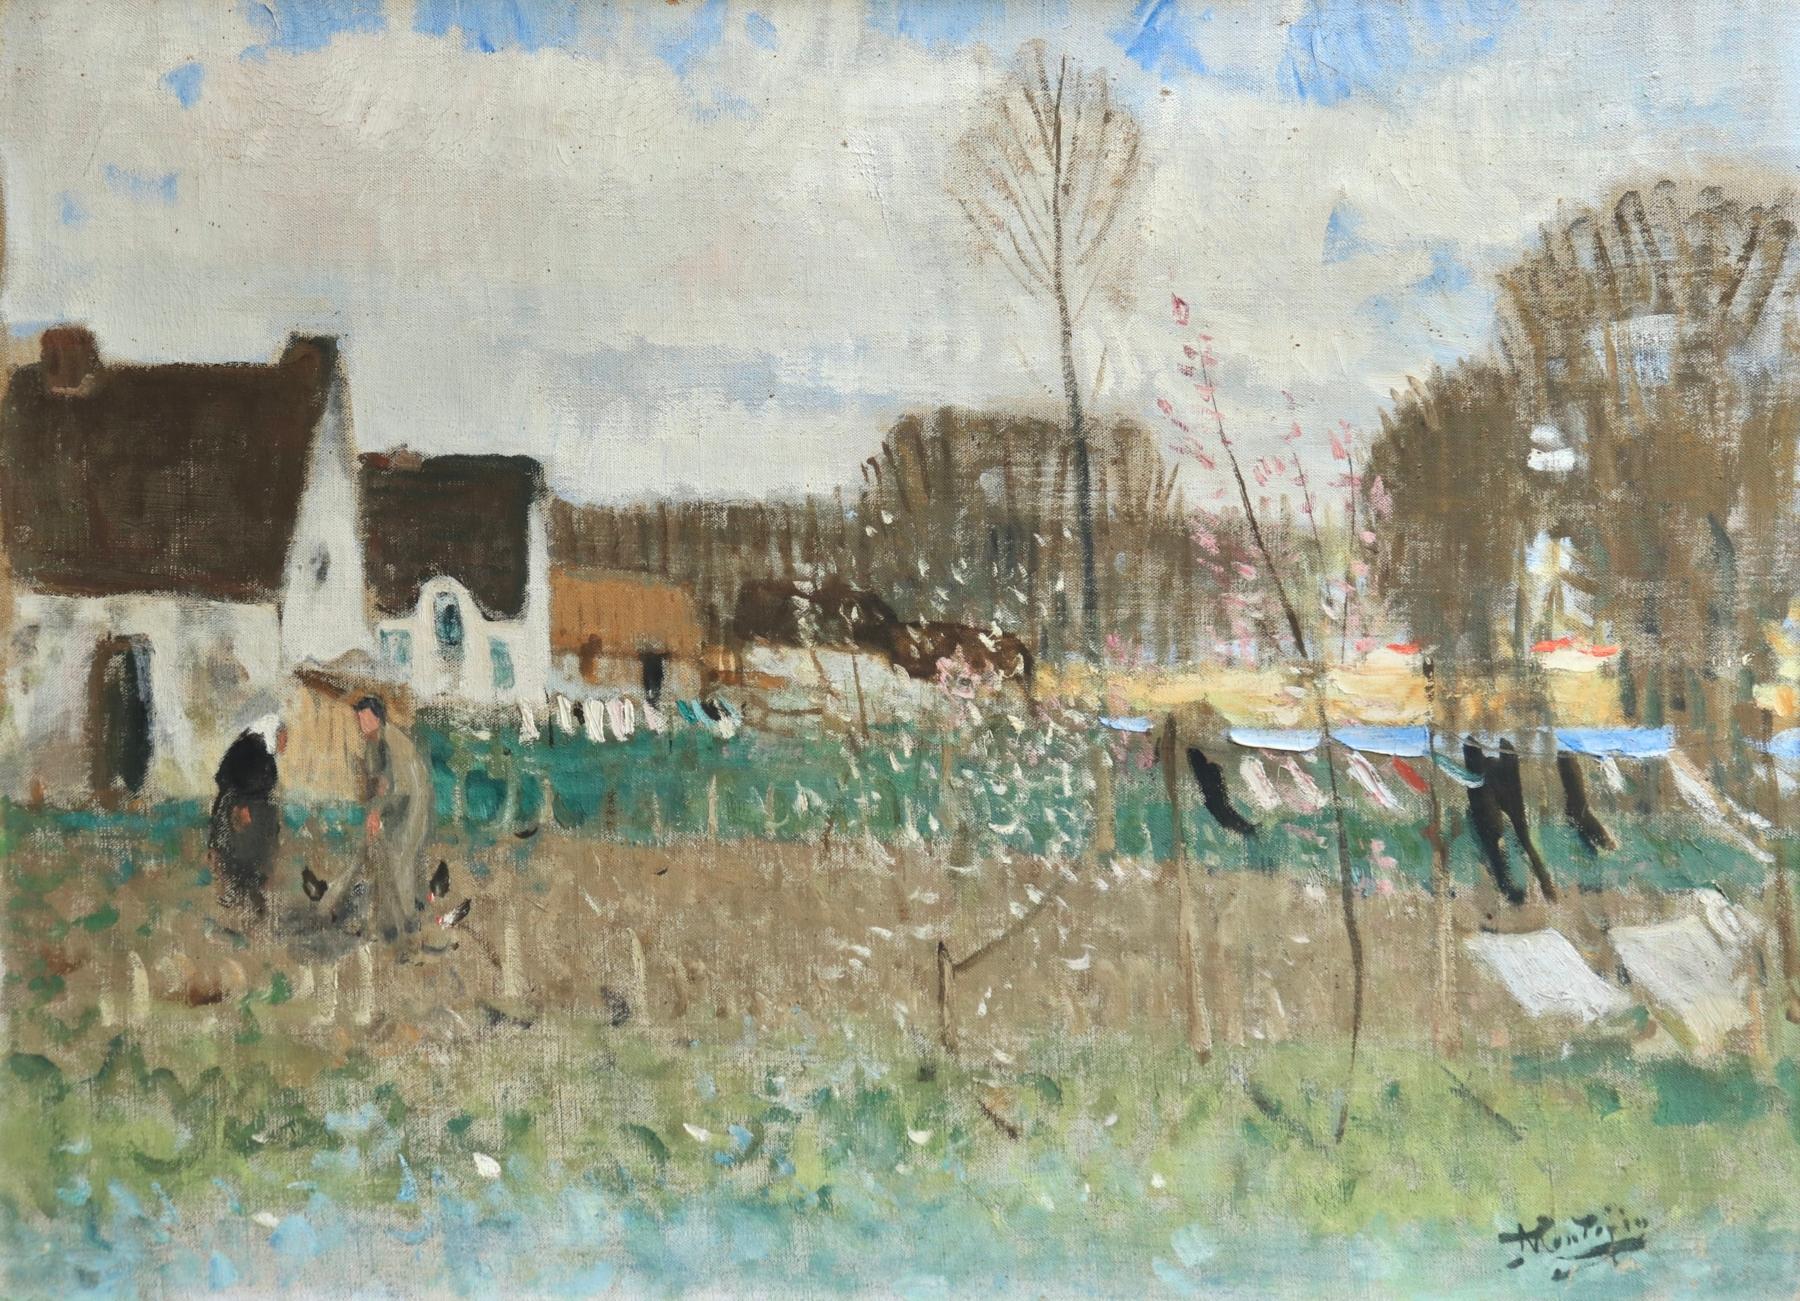 Lavandieres - L'Ile de Fedrun - Post Impressionist Oil, Landscape - P E Montezin - Painting by Pierre Eugene Montezin